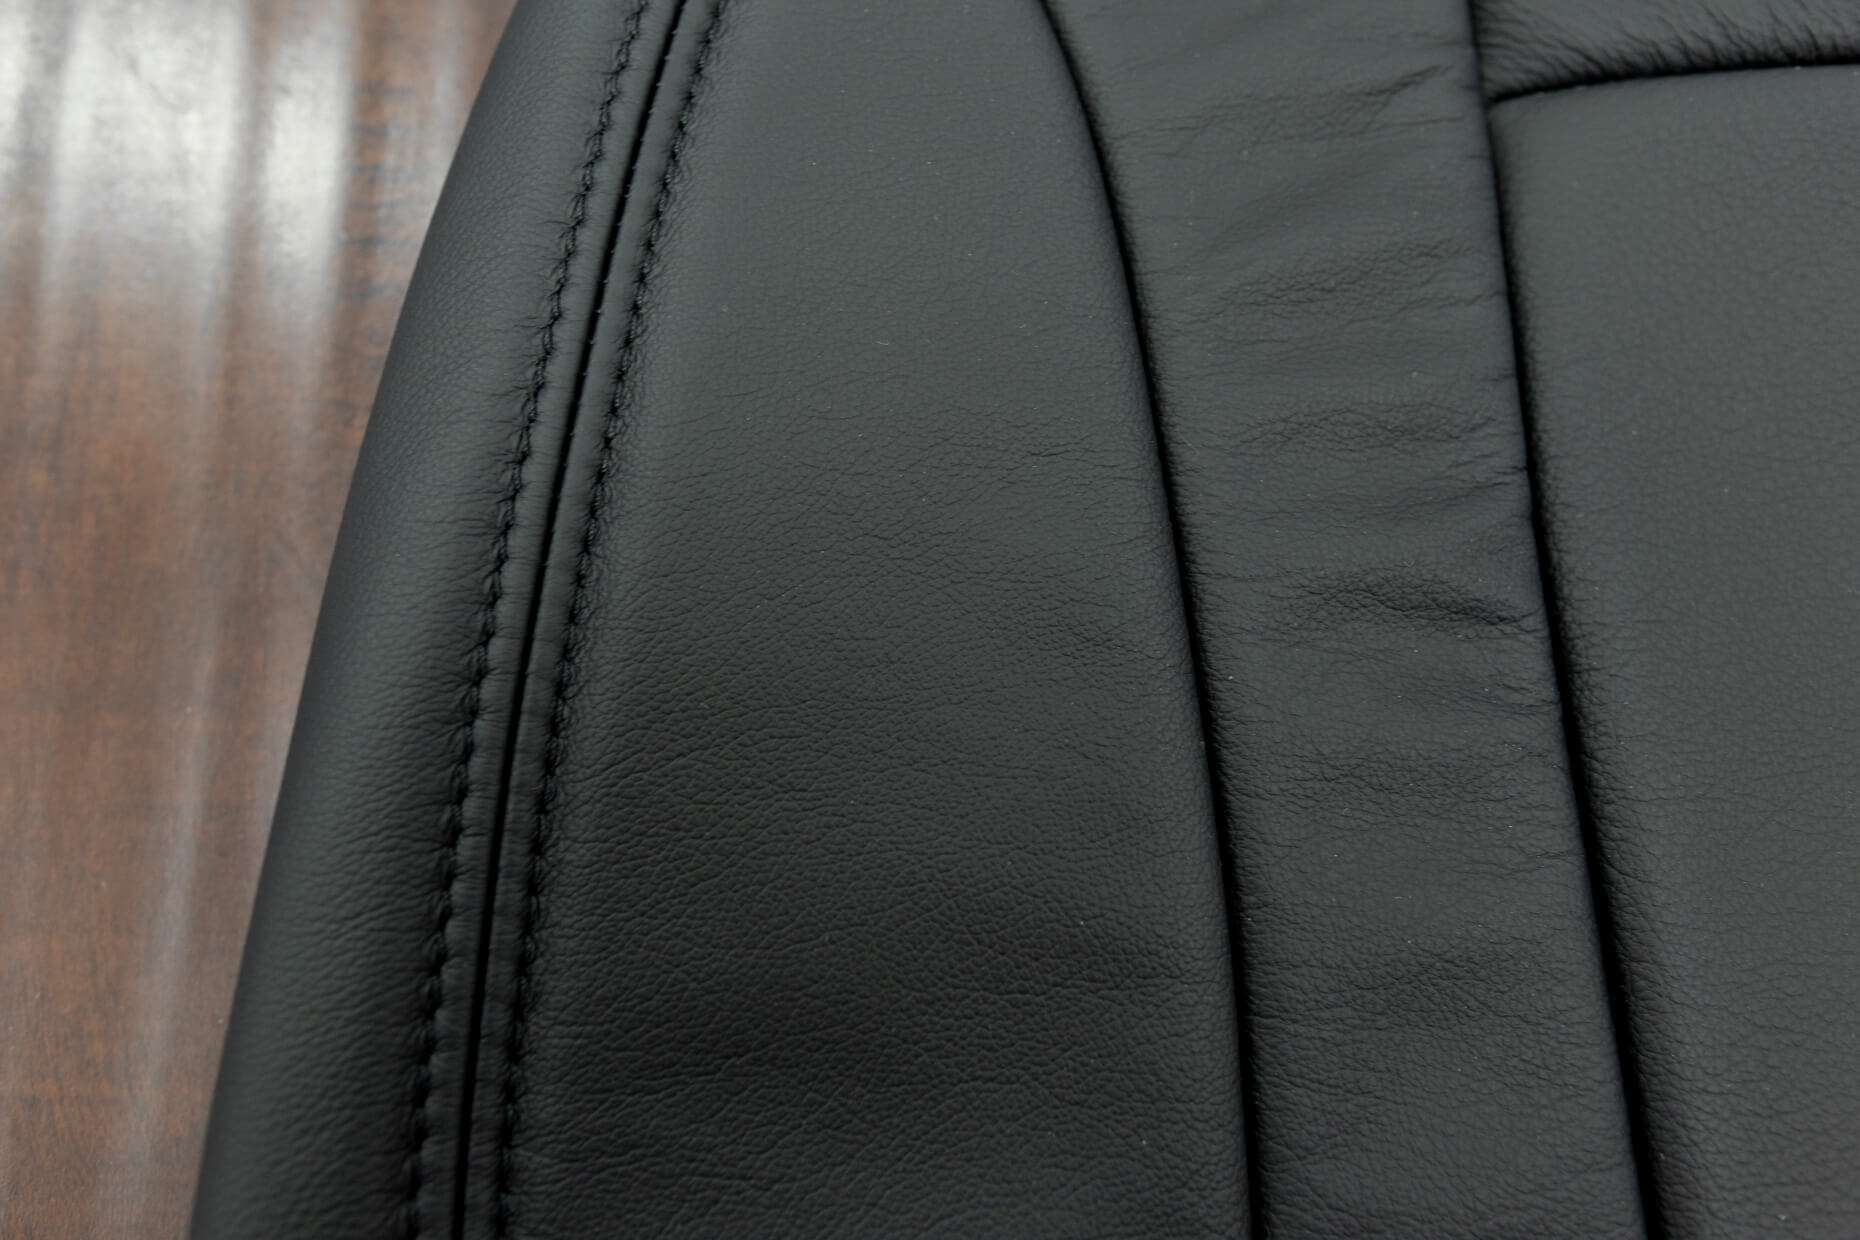 2003-2004 Dodge Dakota Leather Kit - Black - Side double-stitching